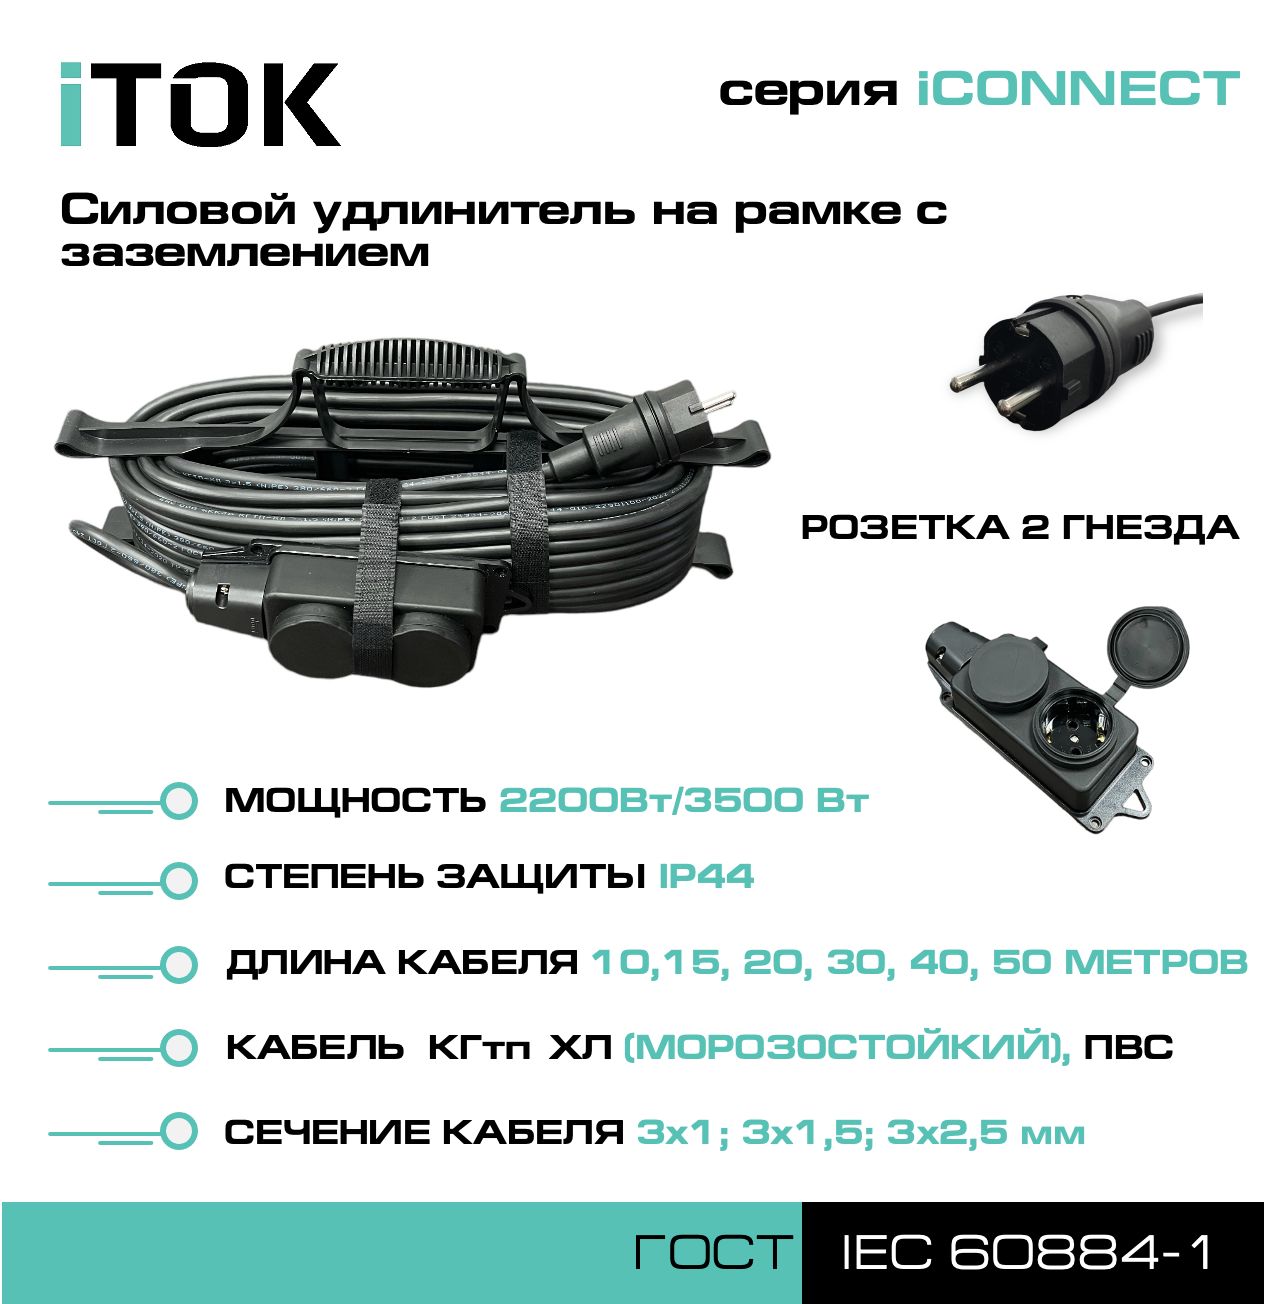 Удлинитель на рамке с заземлением серии iTOK iCONNECT КГтп-ХЛ 3х2,5 мм 2 гнезда IP44 15 м удлинитель navigator npe s 05 300 x 2x0 75 б з 5 гнезда 3м 71553